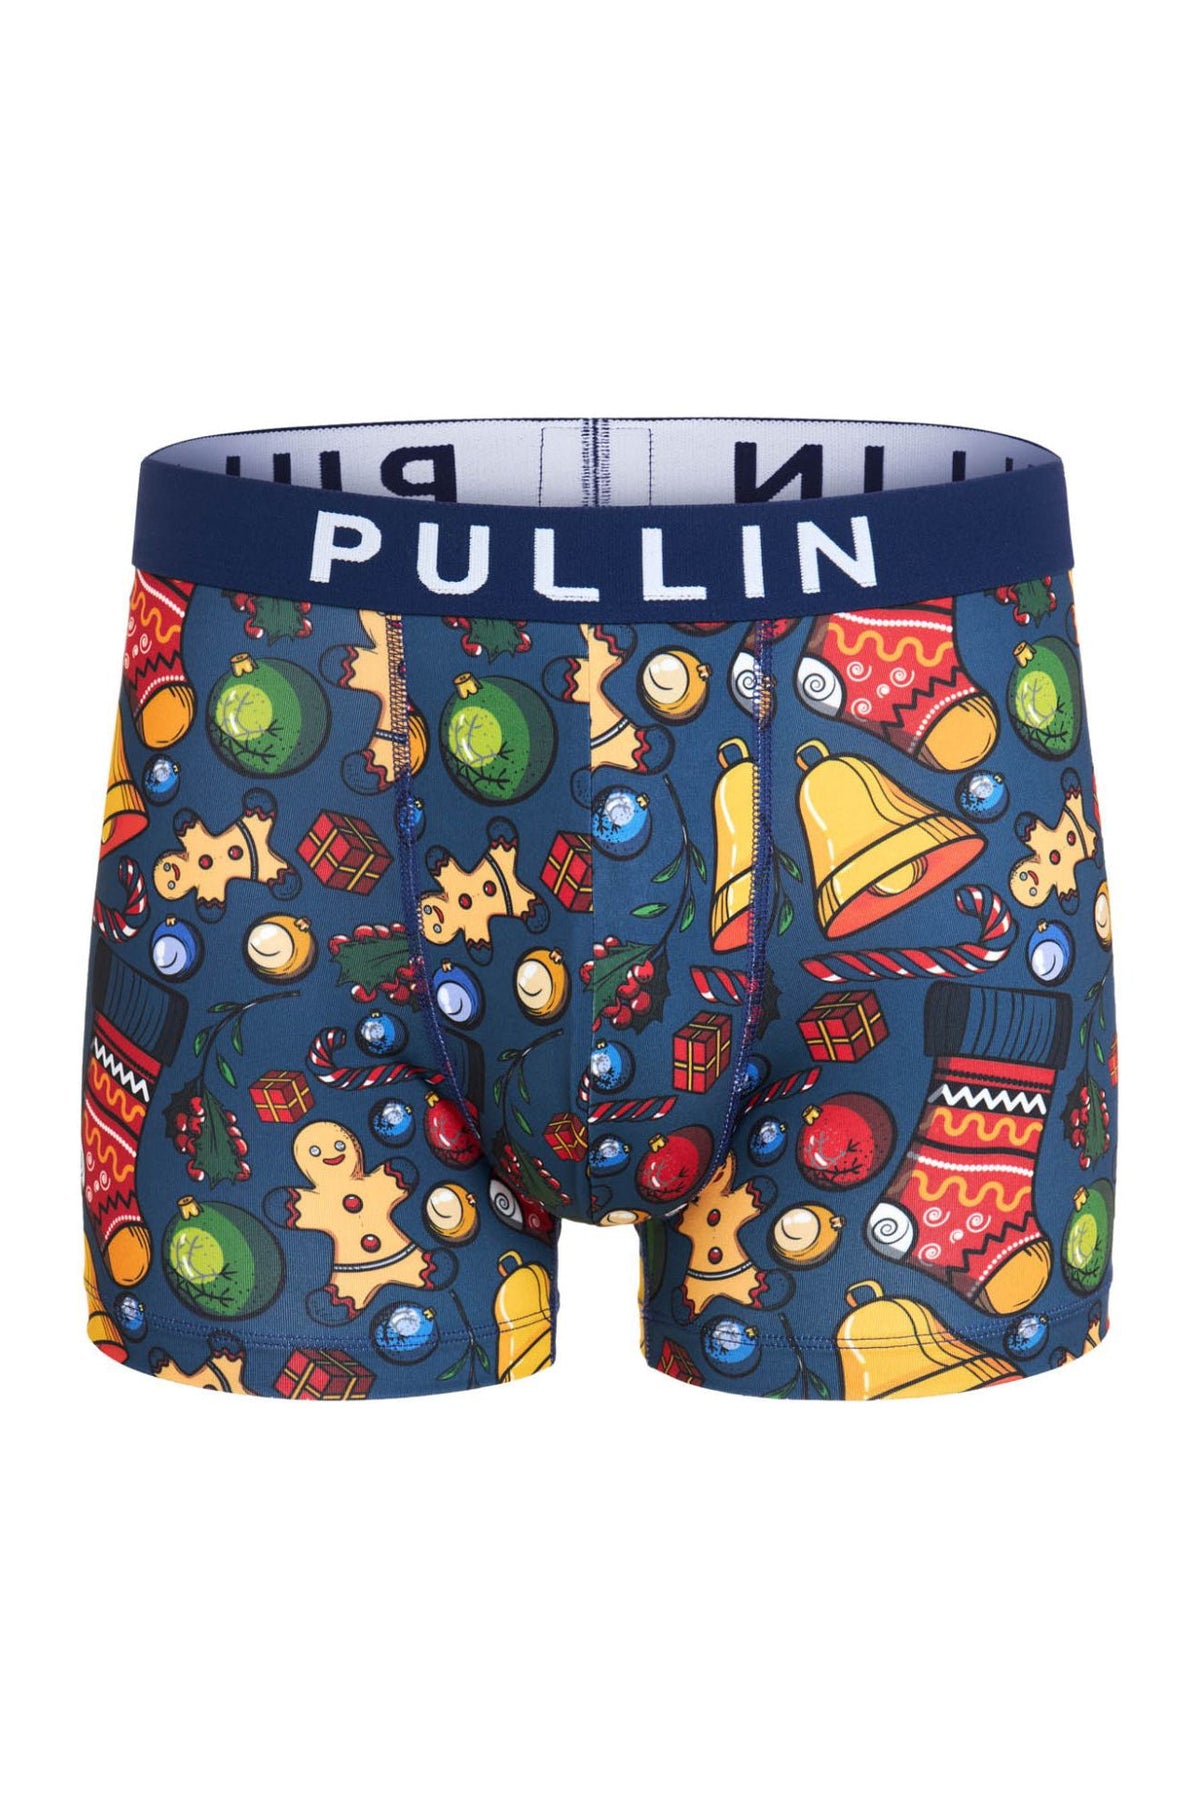 Boxers pour homme par Pullin | MAS KDOXMAX | Boutique Vvög, vêtements mode pour homme et femme